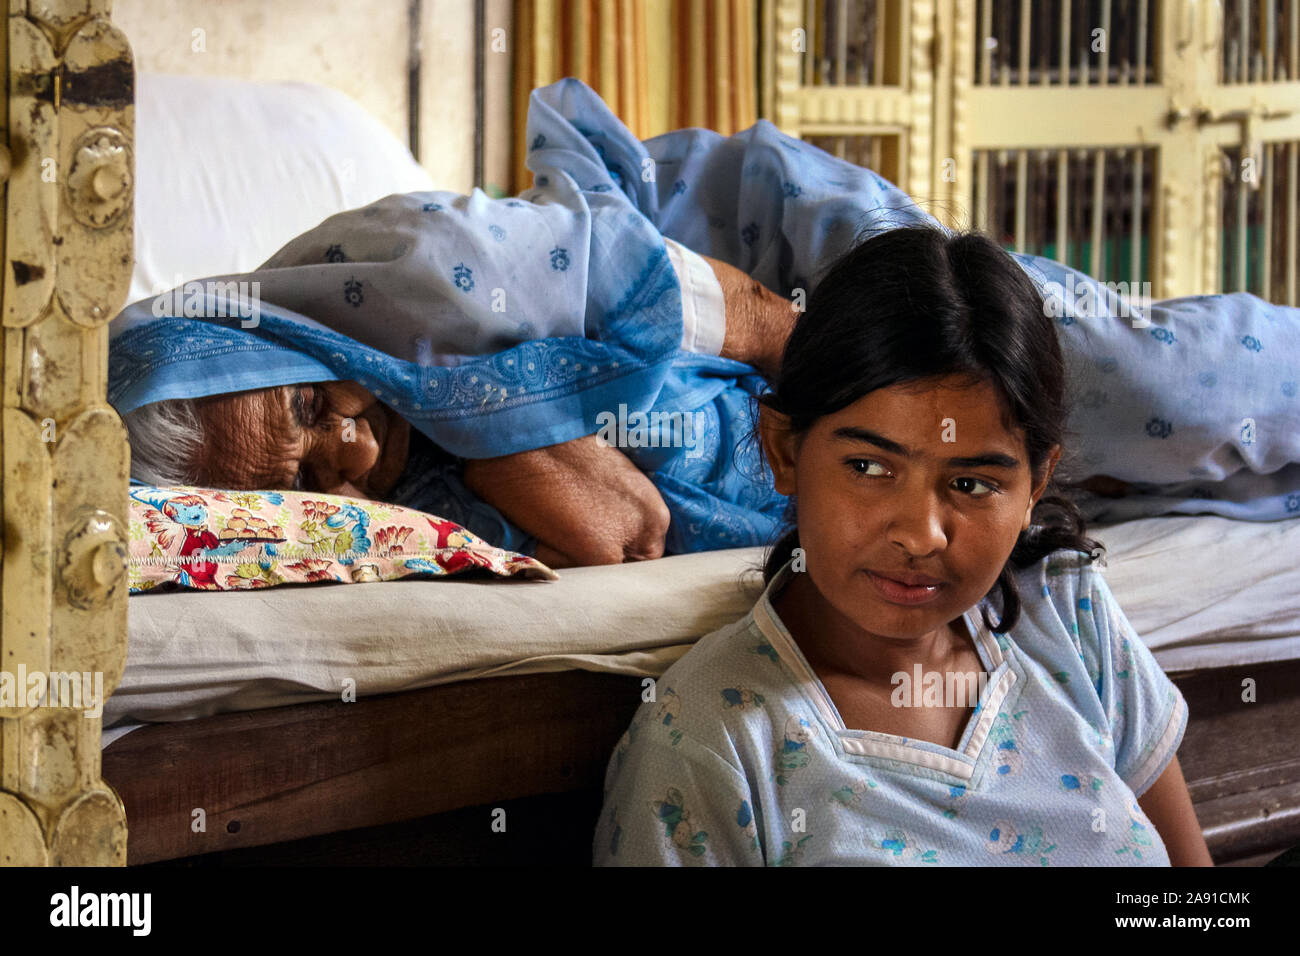 Pushkar, Rajasthan, Indien: Eine ältere Indianerin schläft auf dem Bett, während ein Mädchen neben ihr sitzt. Stockfoto